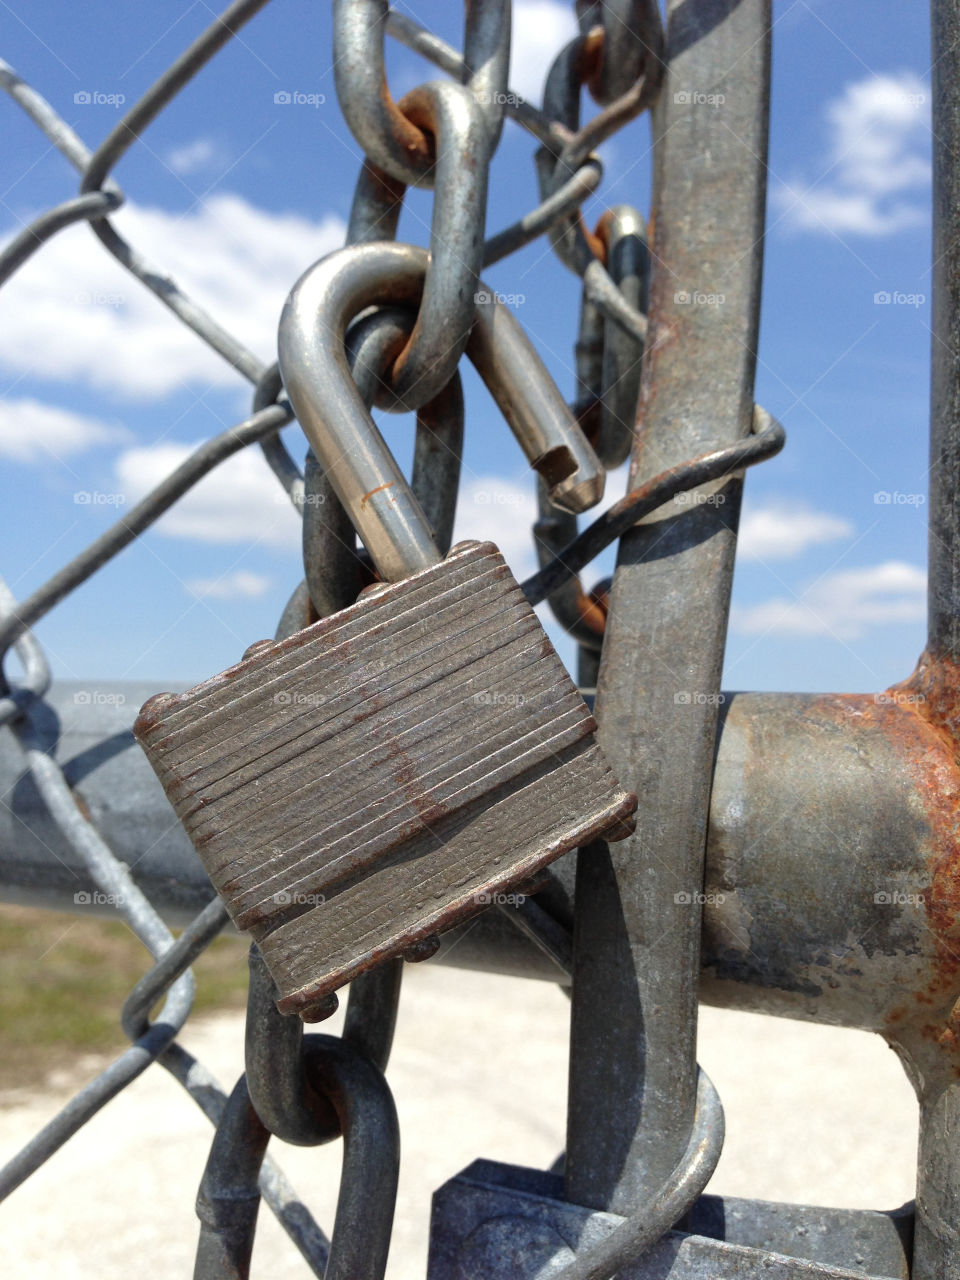 Locks and fences. Locks and fences 